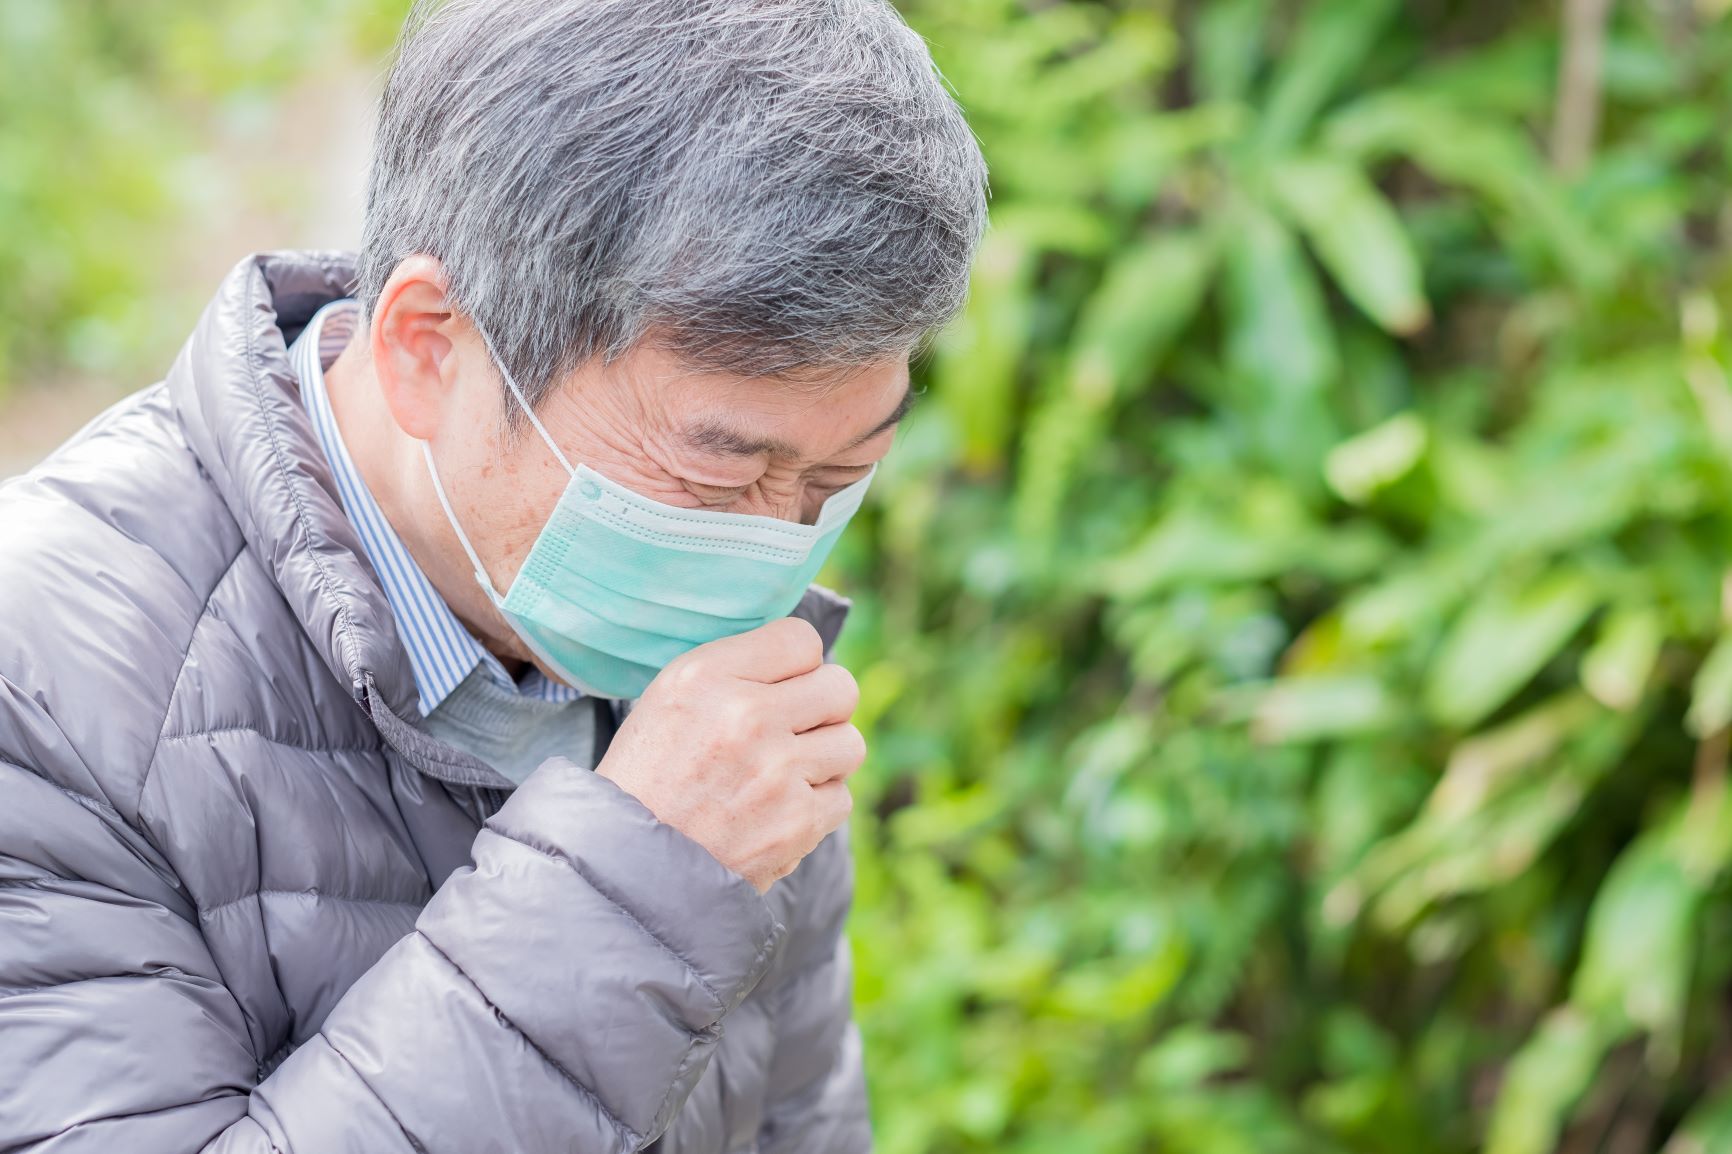 วัณโรค โรคติดต่อในระบบทางเดินหายใจที่ไม่ควรลืม thaihealth